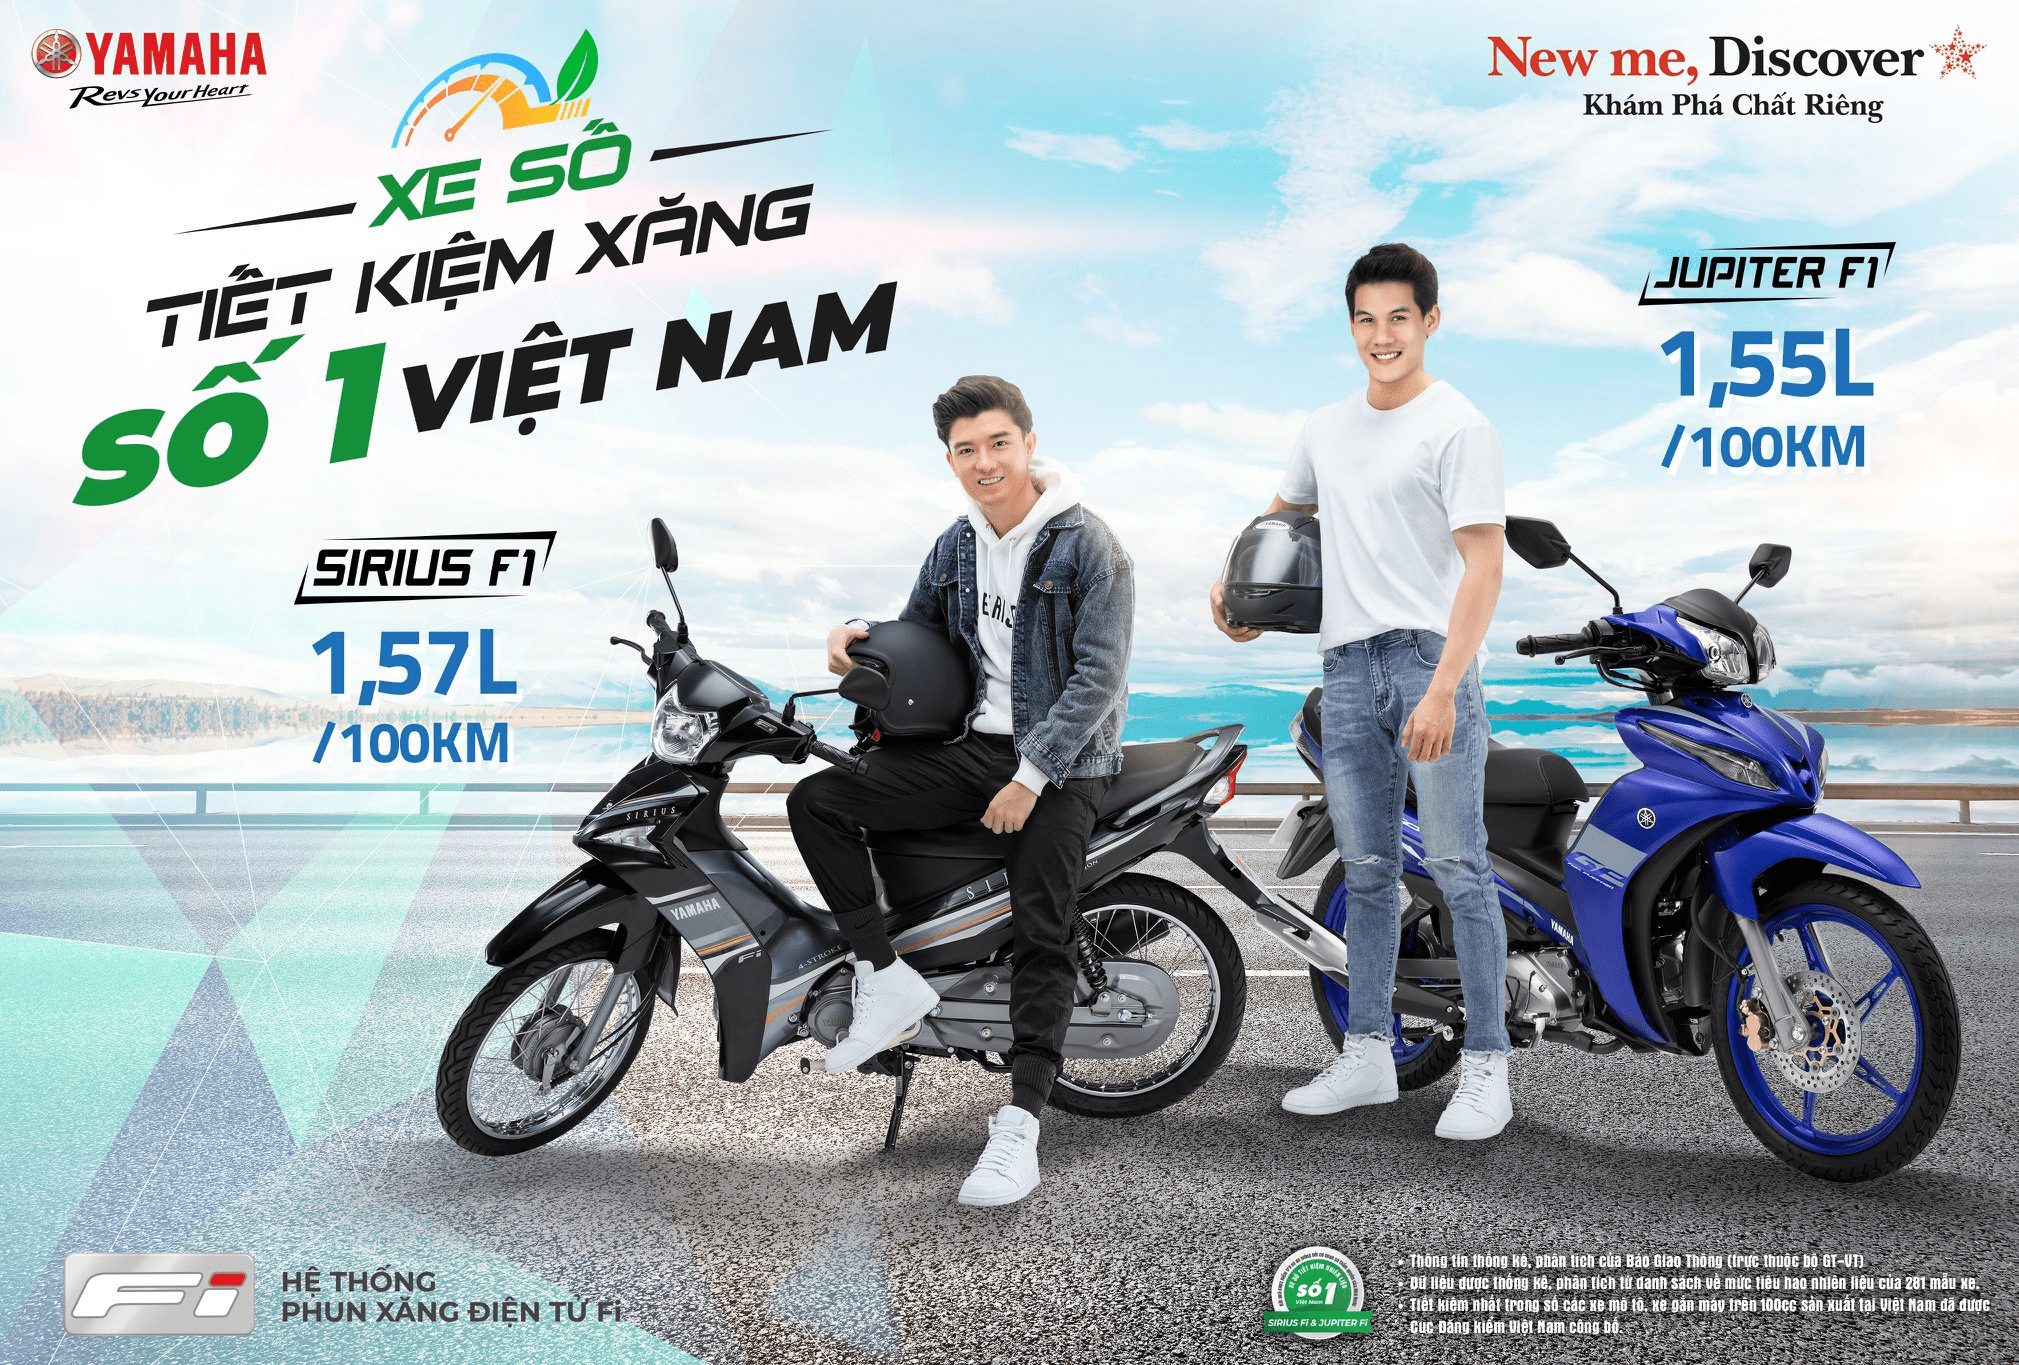 5 dòng xe số bán chạy nhất Việt Nam năm 2015  Báo Người lao động